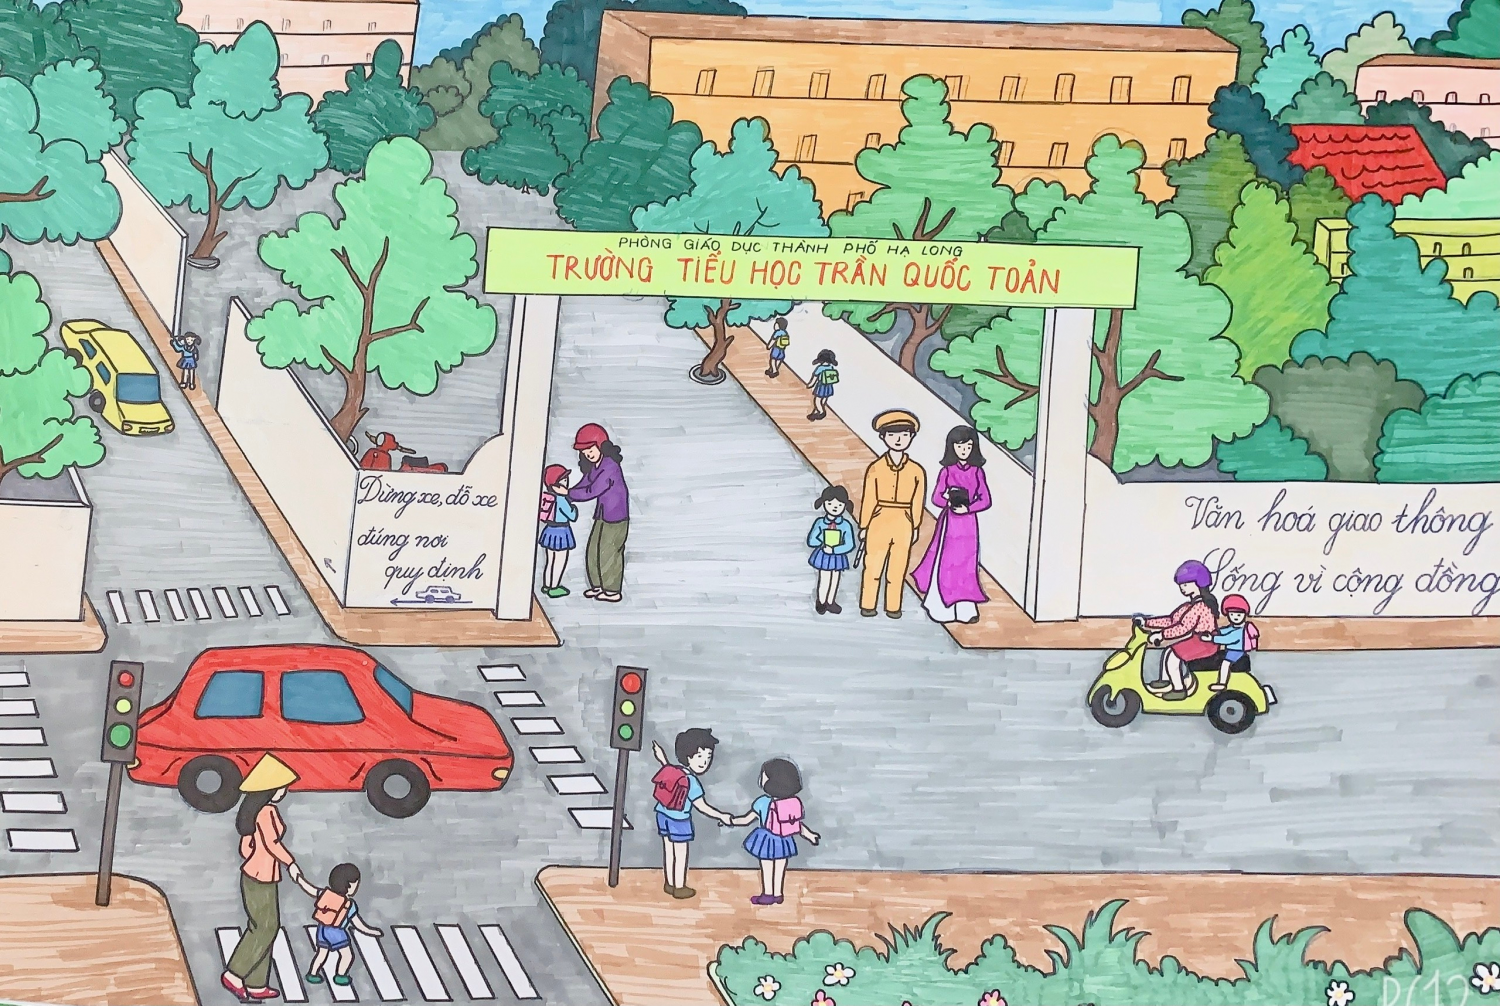 Tác phẩm: “Văn hóa giao thông – Cộng đồng hạnh phúc” do Đoàn viên tổ 1 – Trường TH Trần Quốc Toản, TP Hạ Long, QN vẽ